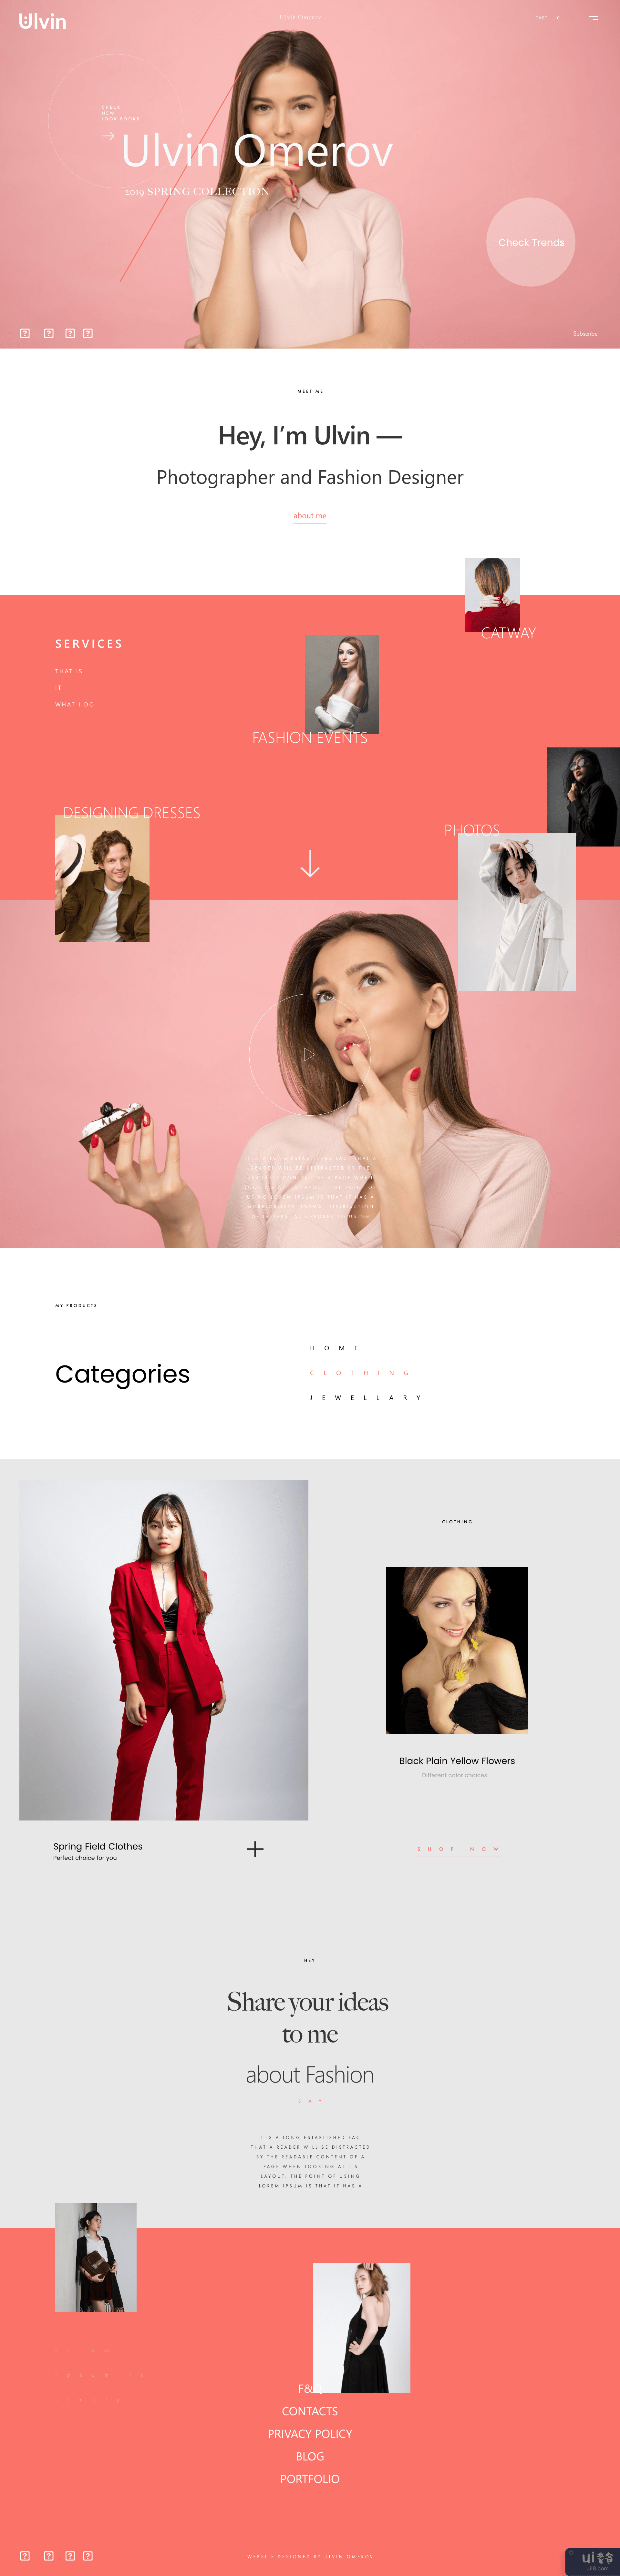 电子商务时尚网页设计登陆页面(Ecommerce Fashion Web Design Landing page)插图